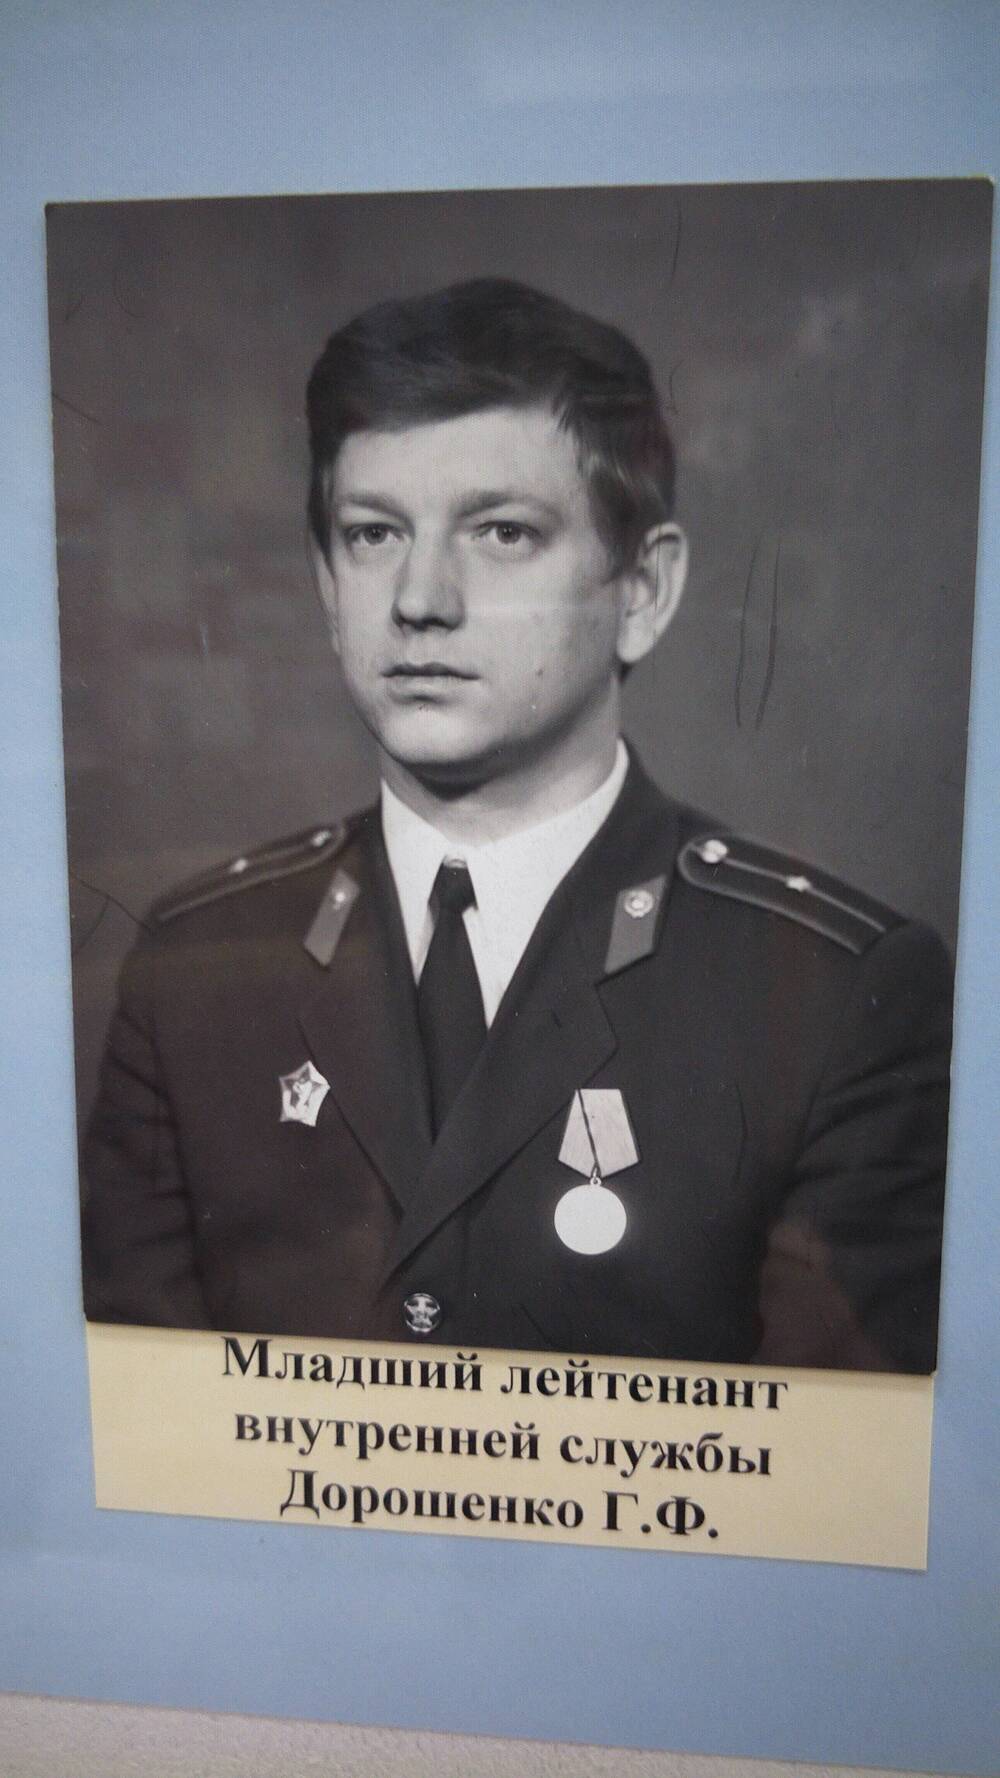 Фото черно-белое, погрудный портрет младшего лейтенанта внутренней службы Г.Ф. Дорошенко.